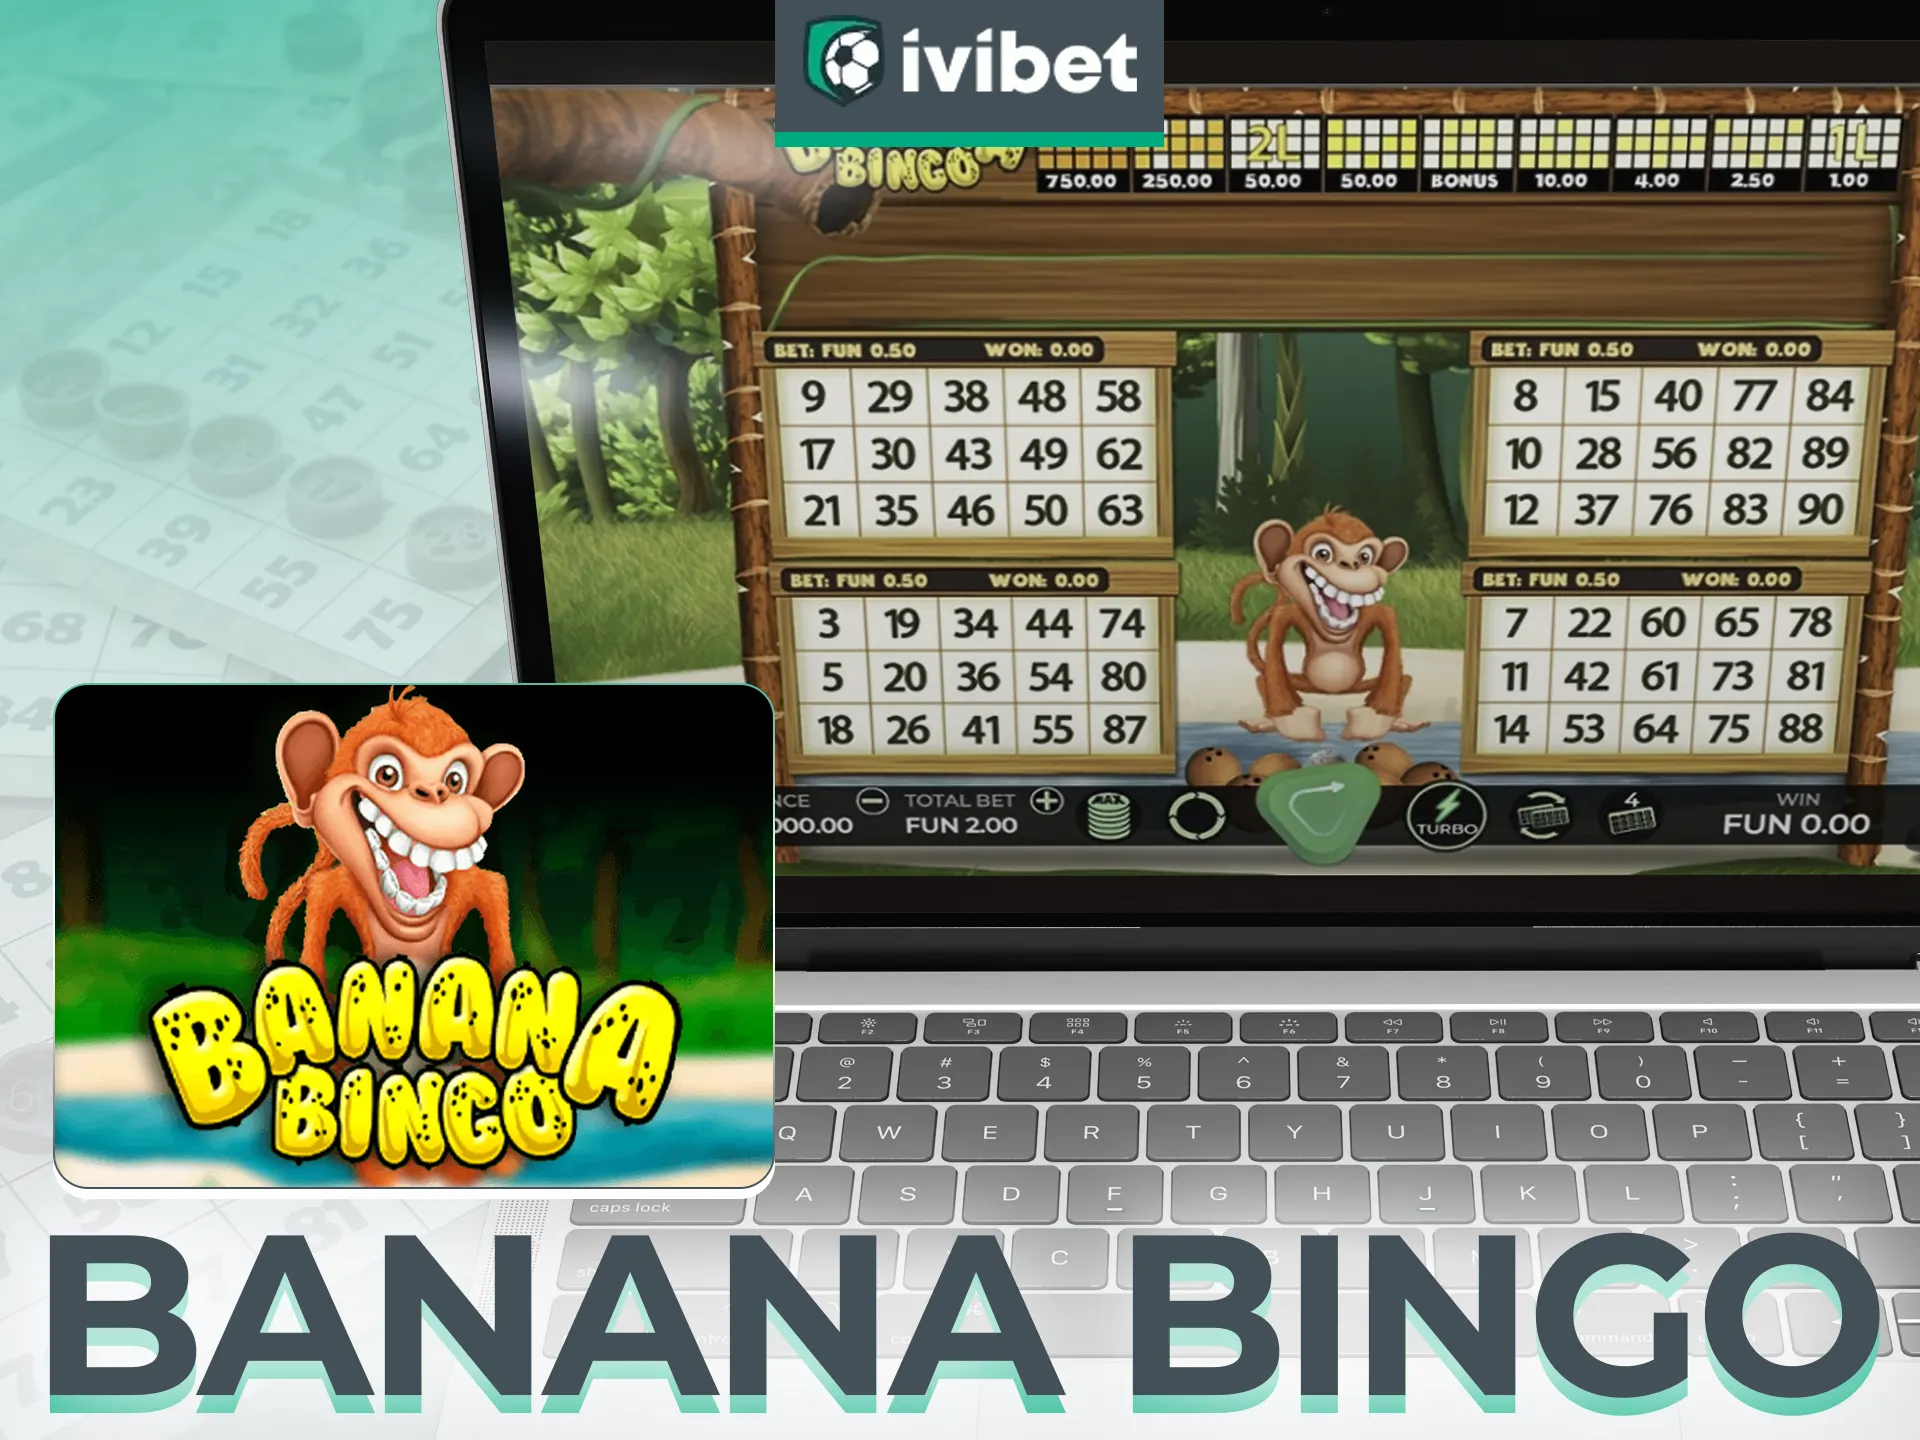 Banana Bingo da Ivibet - Rodadas de 30 bolas, recursos de bônus.